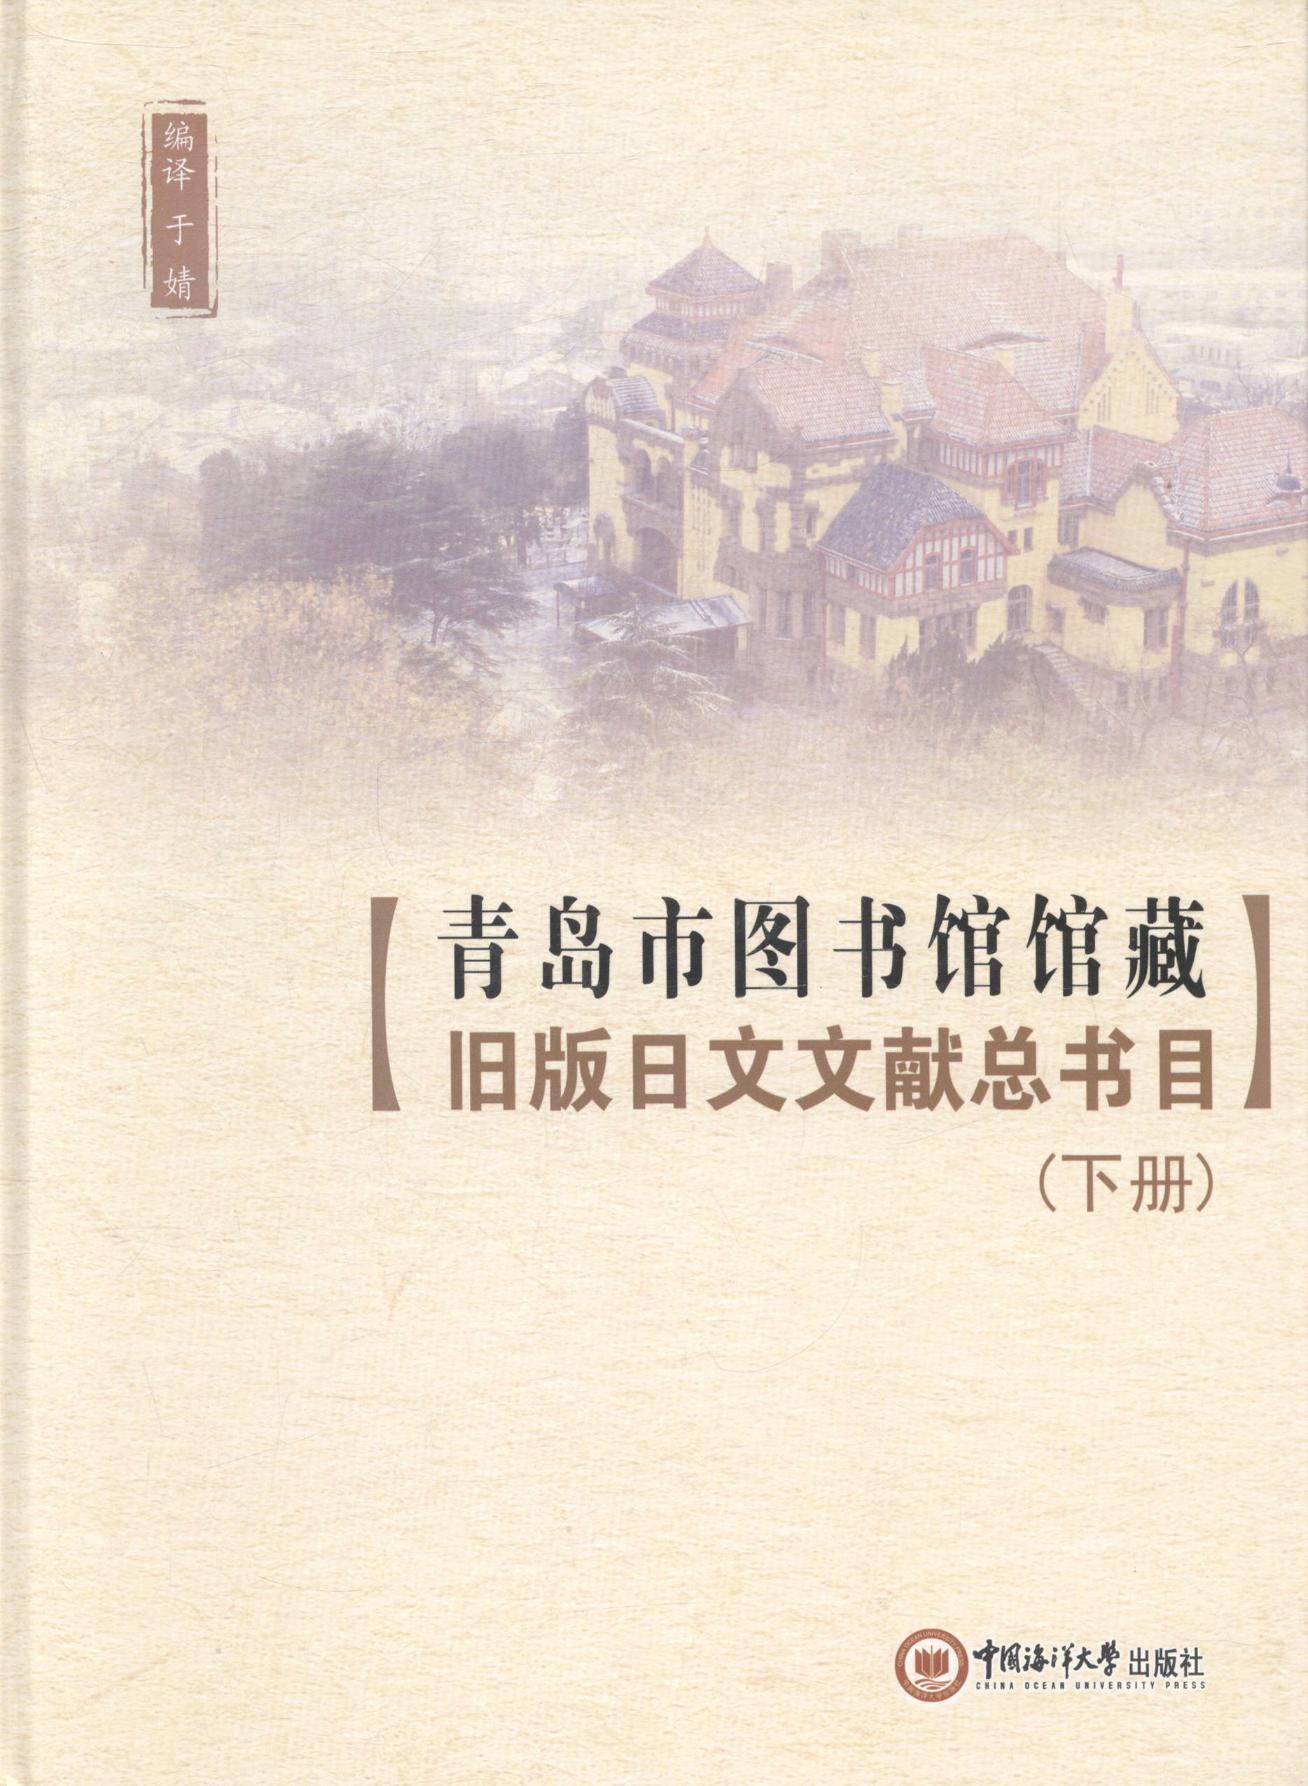 RT 正版 青岛市图书馆馆藏旧版日文文书目9787567006096 于婧中国海洋大学出版社